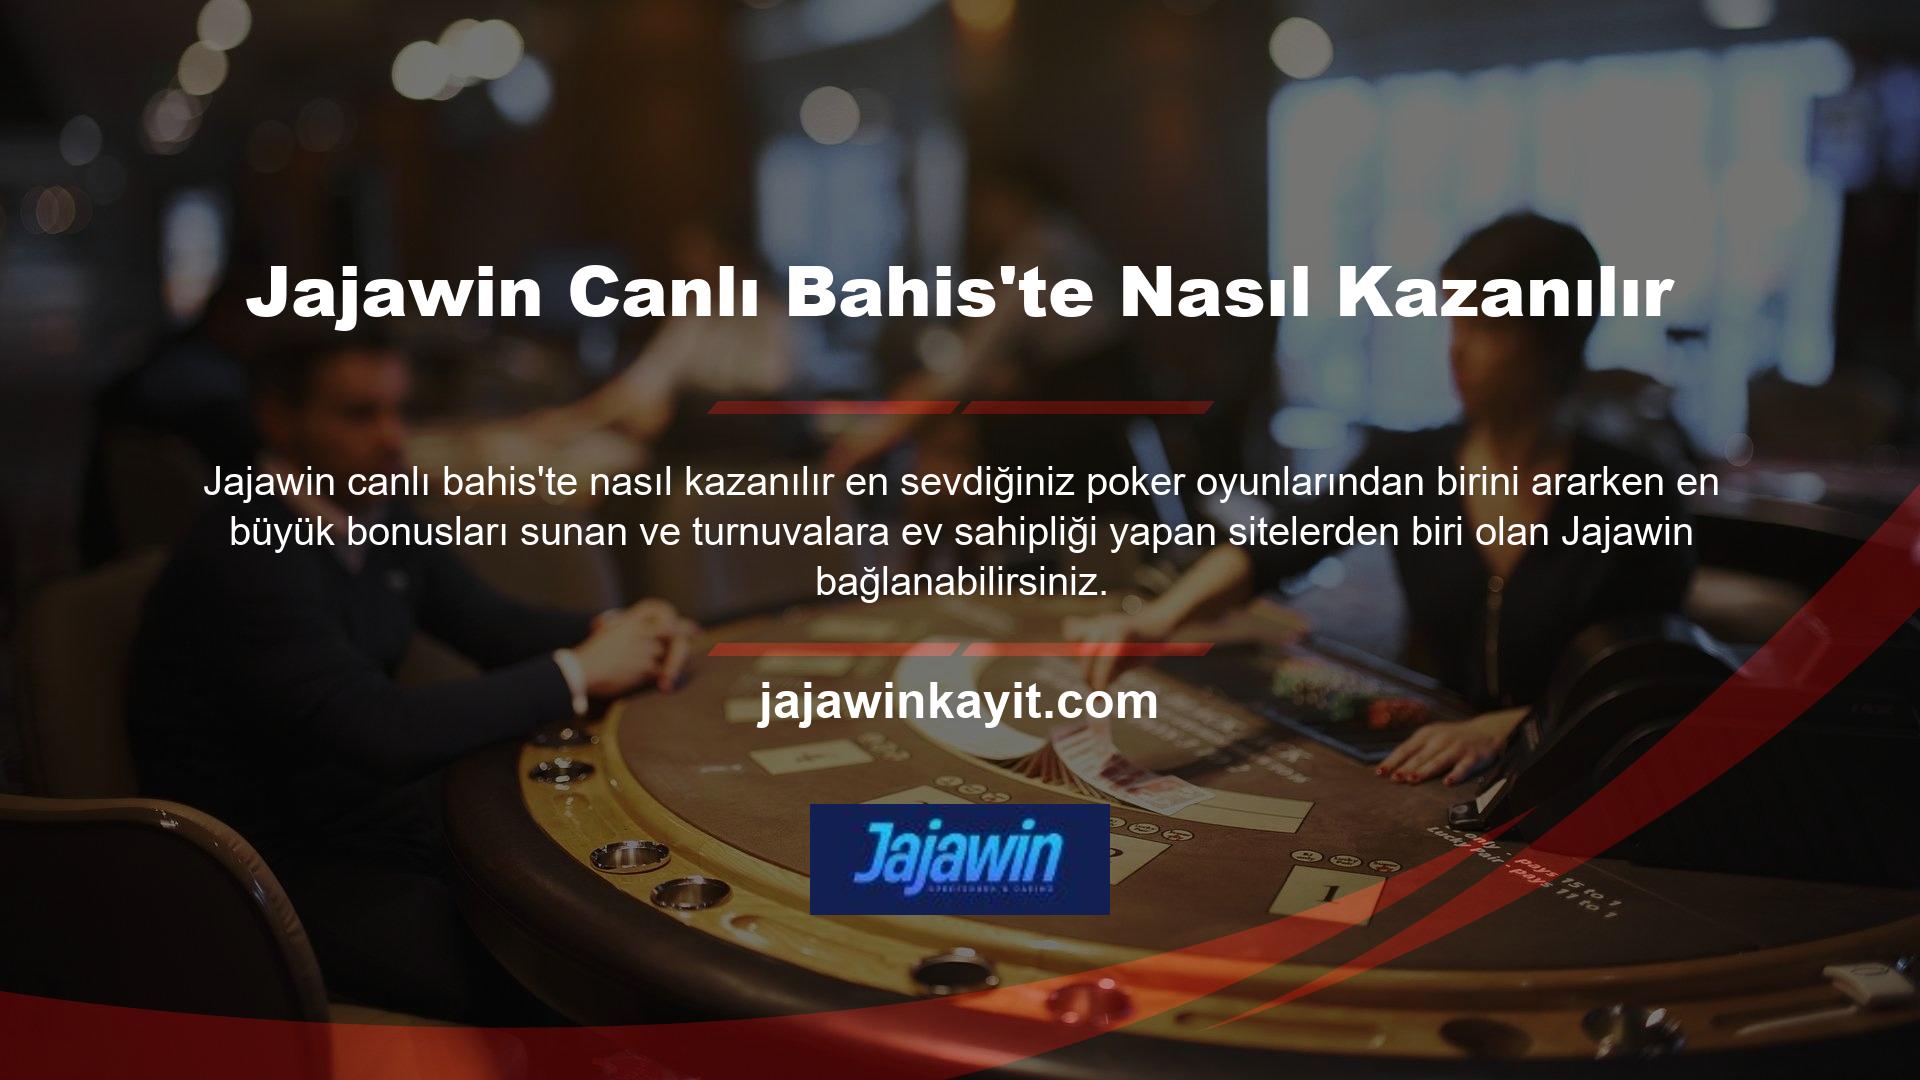 Jajawin gibi diğer tanınmış bahis sitelerinin bulunduğu yerlerde turnuva satın alma koşulları yerine getirilene kadar transferlere izin verilmemektedir